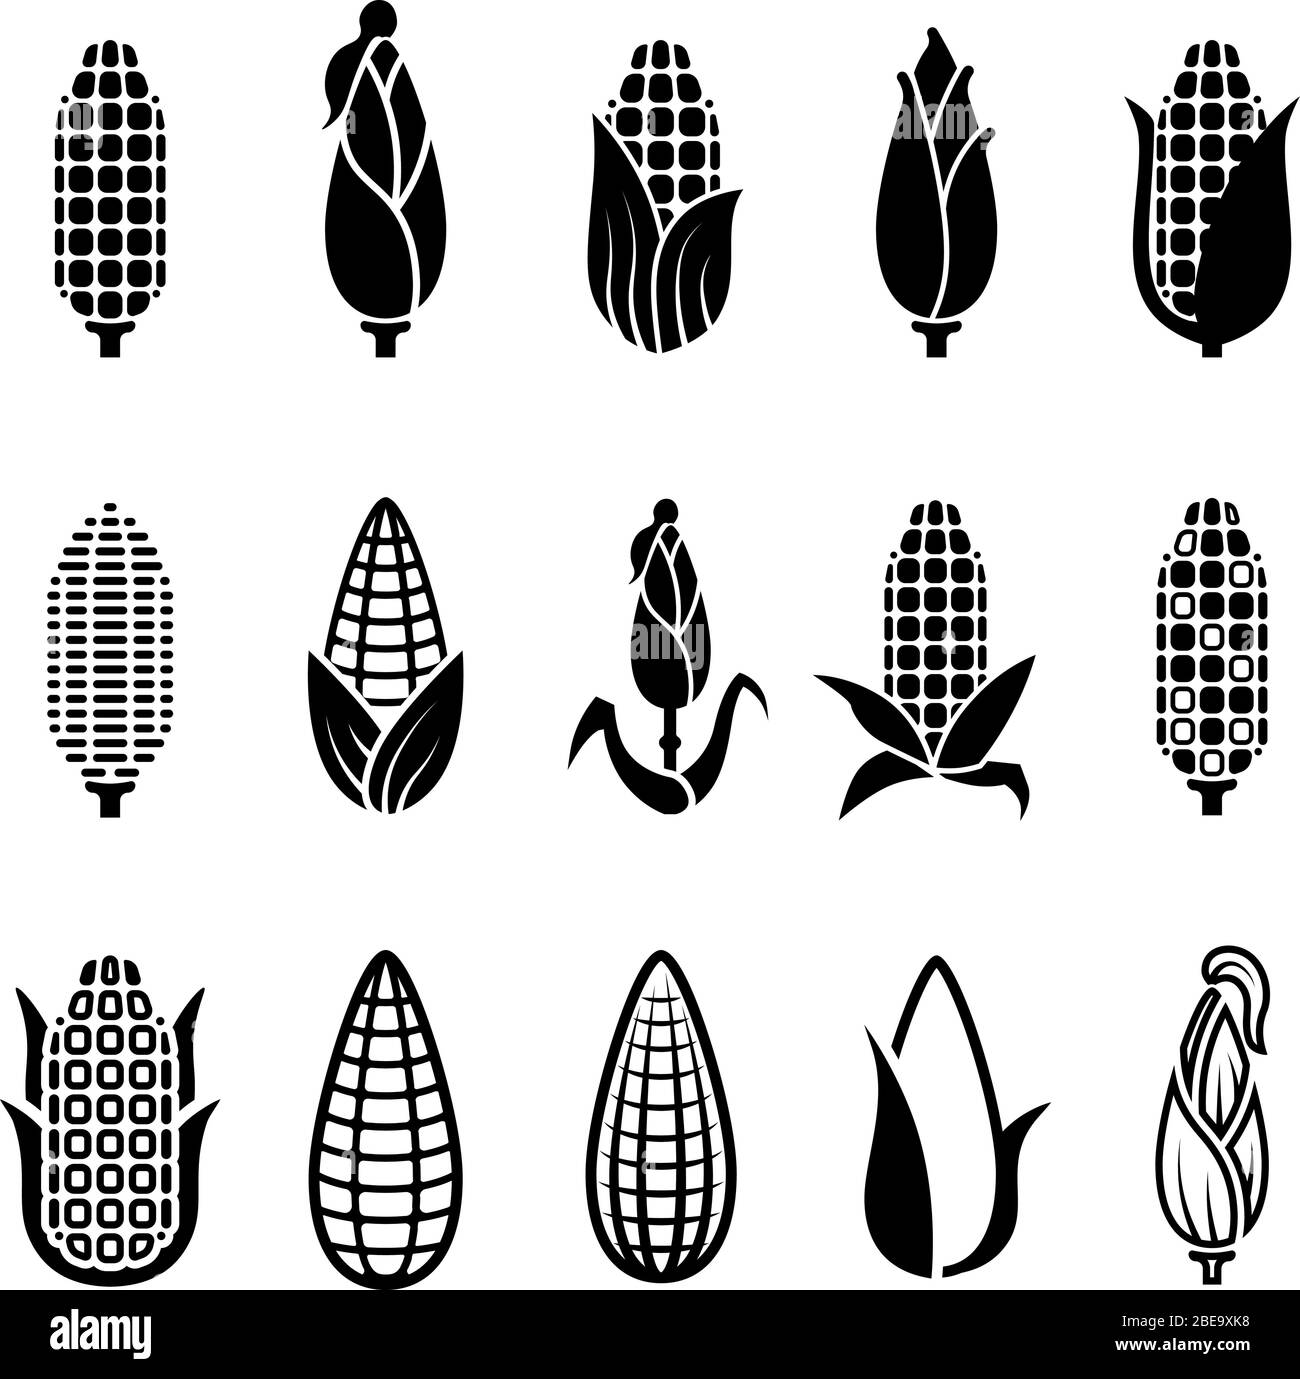 Frische Mais Ernte Vektor-Symbole gesetzt. Mais Mais, Illustration der frischen Ernte Maiskolben monochrom Stock Vektor